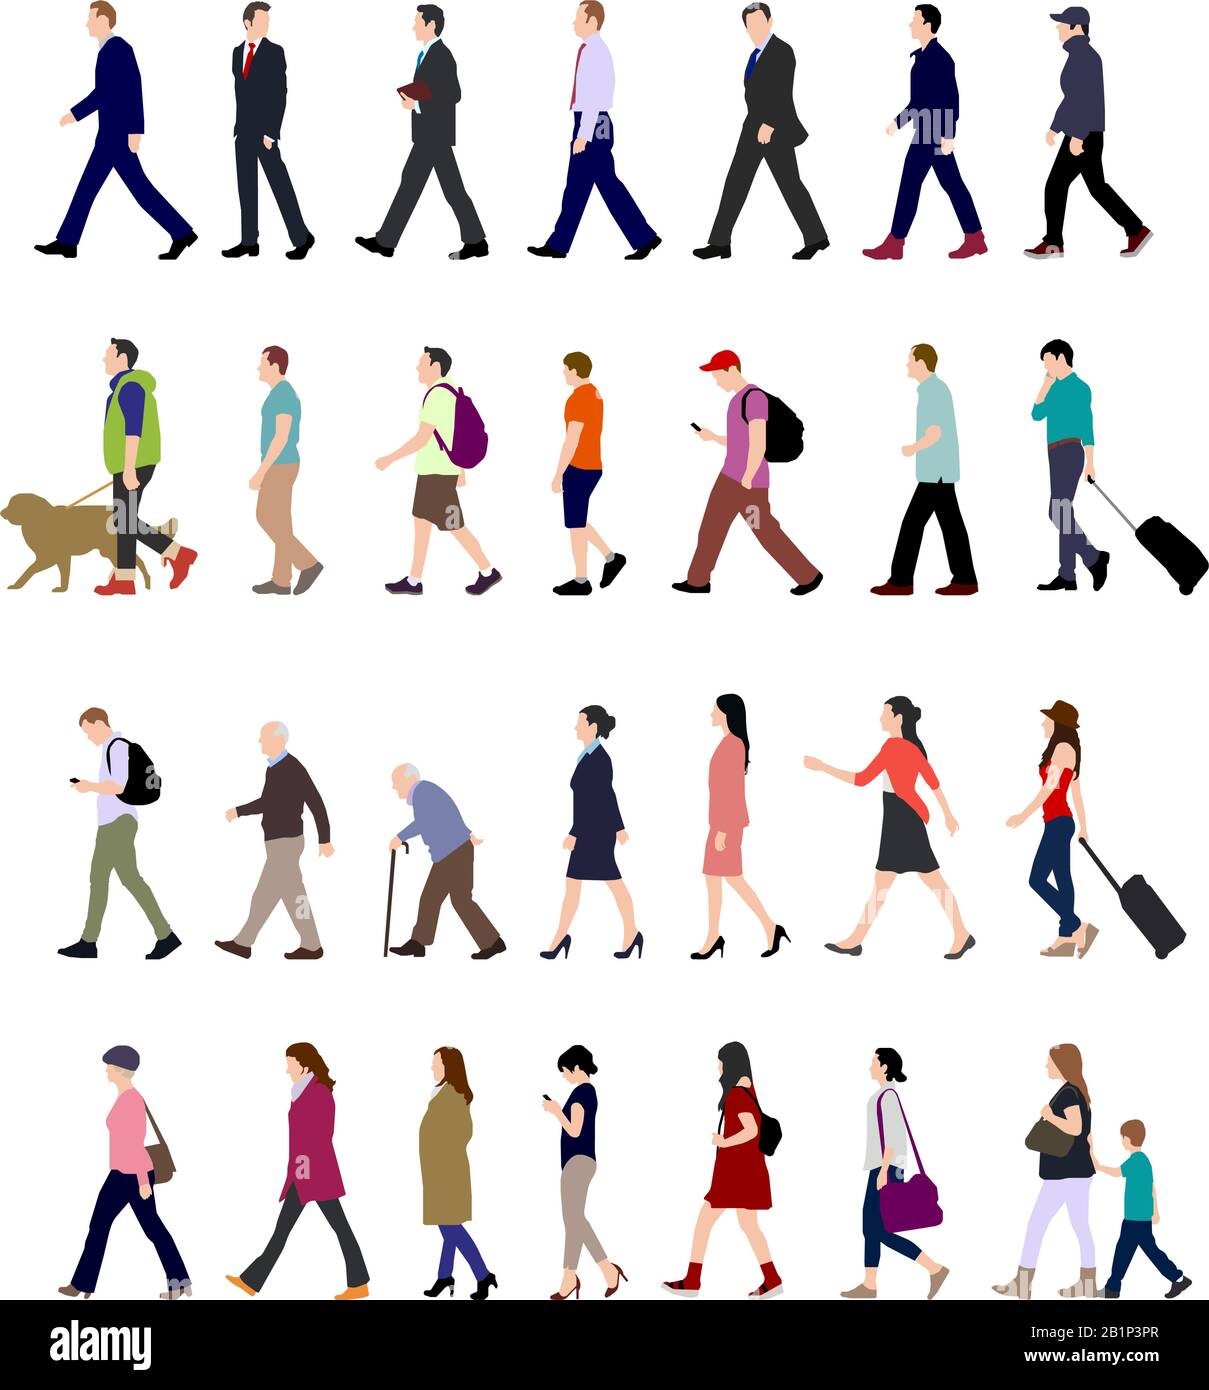 Wanderschaft (männlich, weiblich, Geschäftsperson) - Shouette Illustration Kollektion (Seitenansicht) Stock Vektor